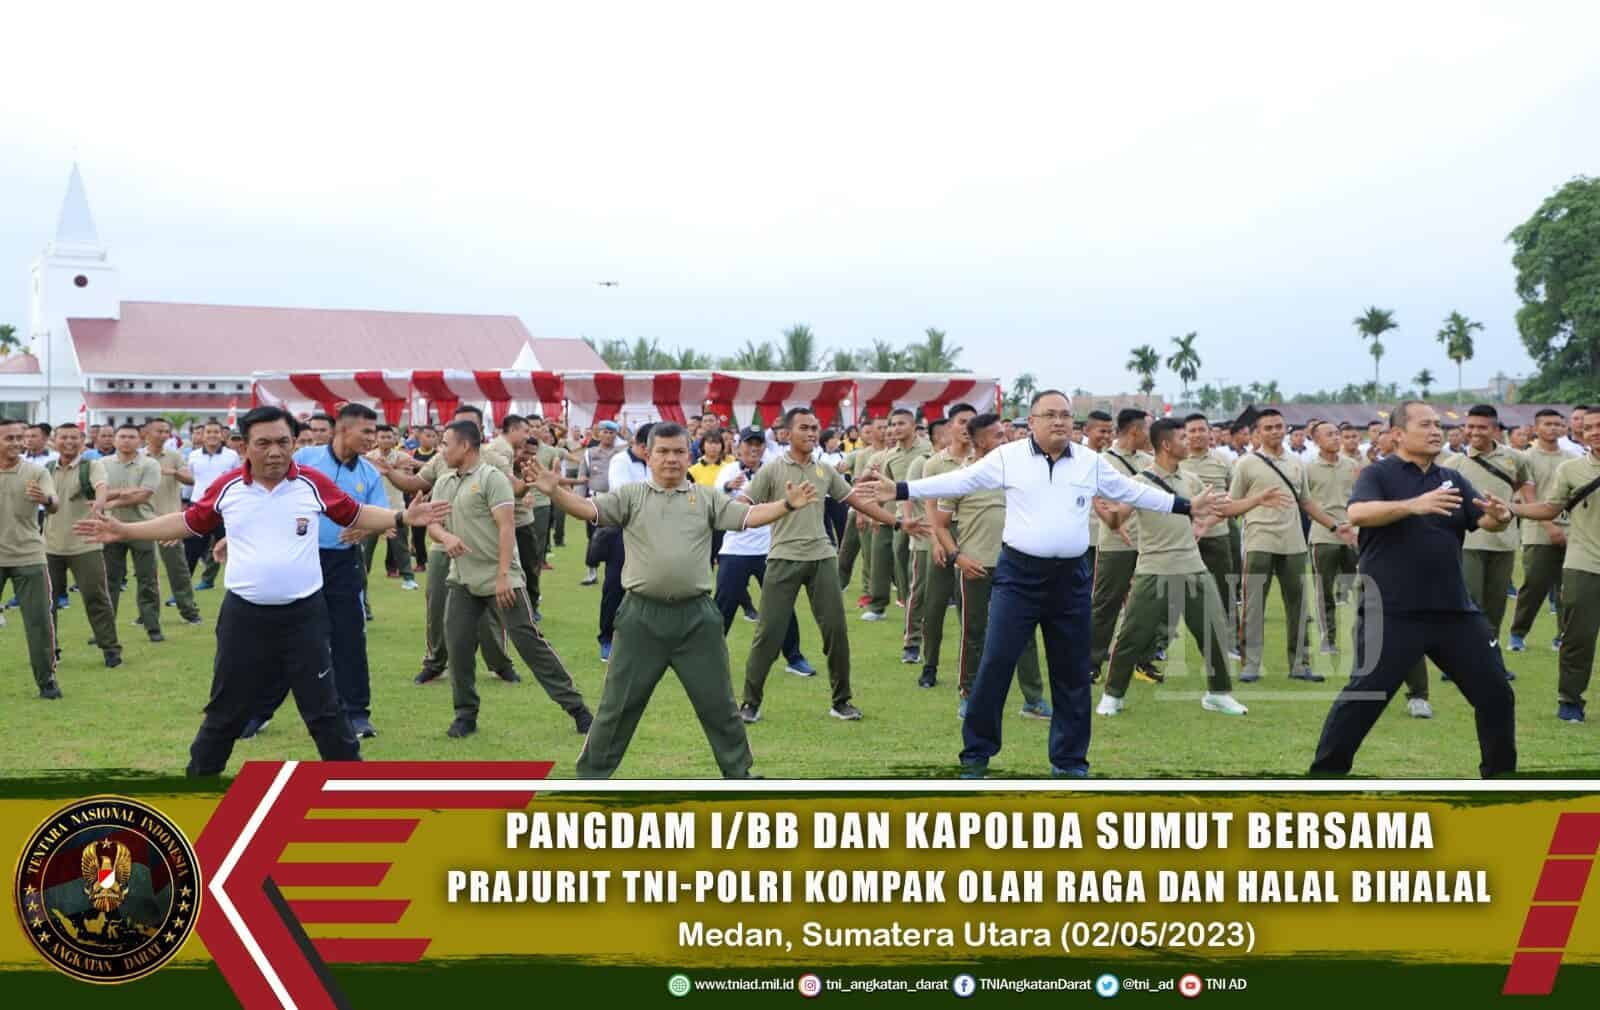 Pangdam I/BB dan Kapolda Sumut Bersama Prajurit TNI-Polri Kompak Olah Raga dan Halal Bihalal di Lapangan Mapolda Sumut